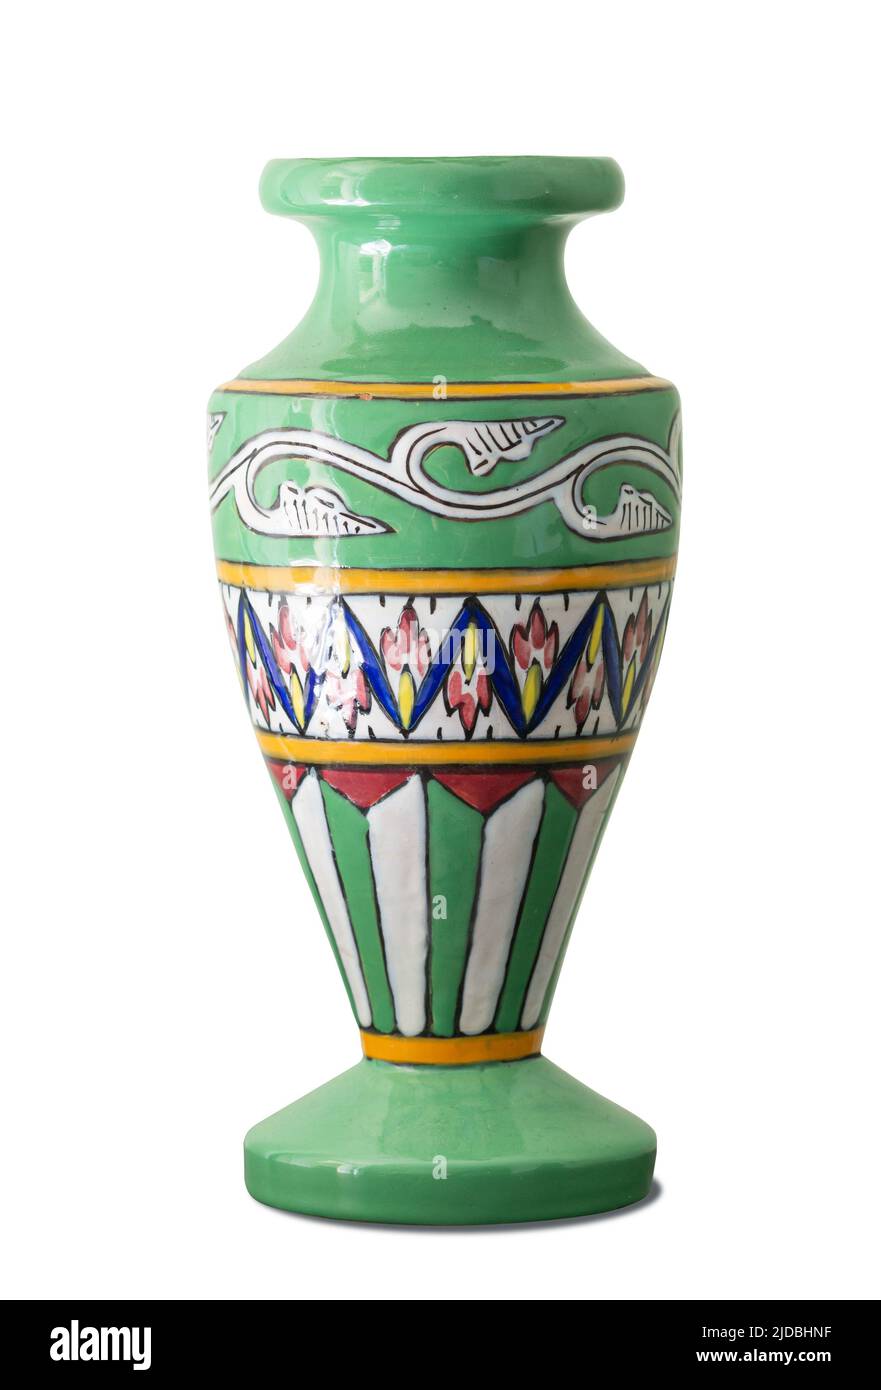 Vaso verde con decorazione colorata, isolato su sfondo bianco Foto Stock